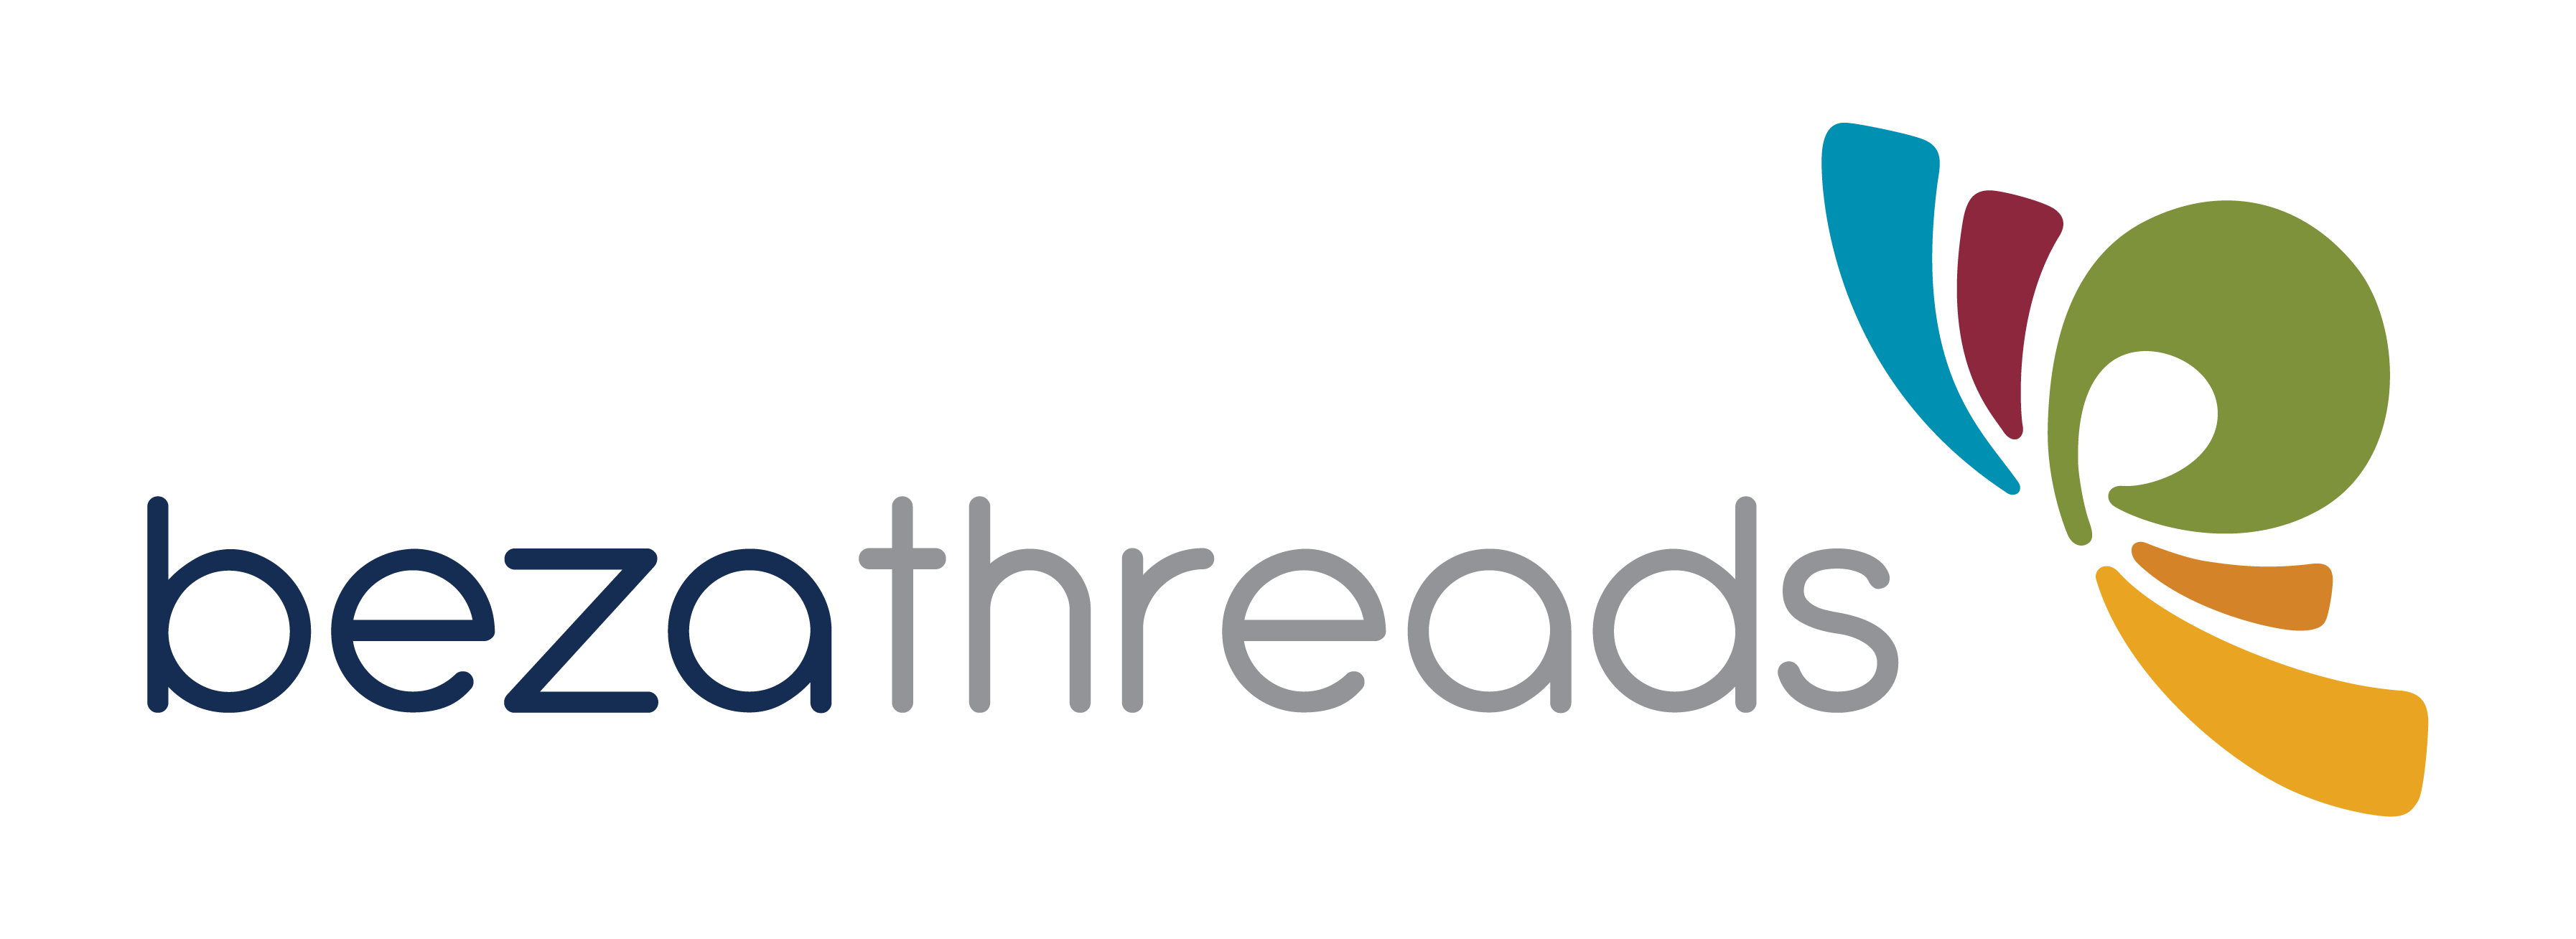 Beza Threads Foundation logo